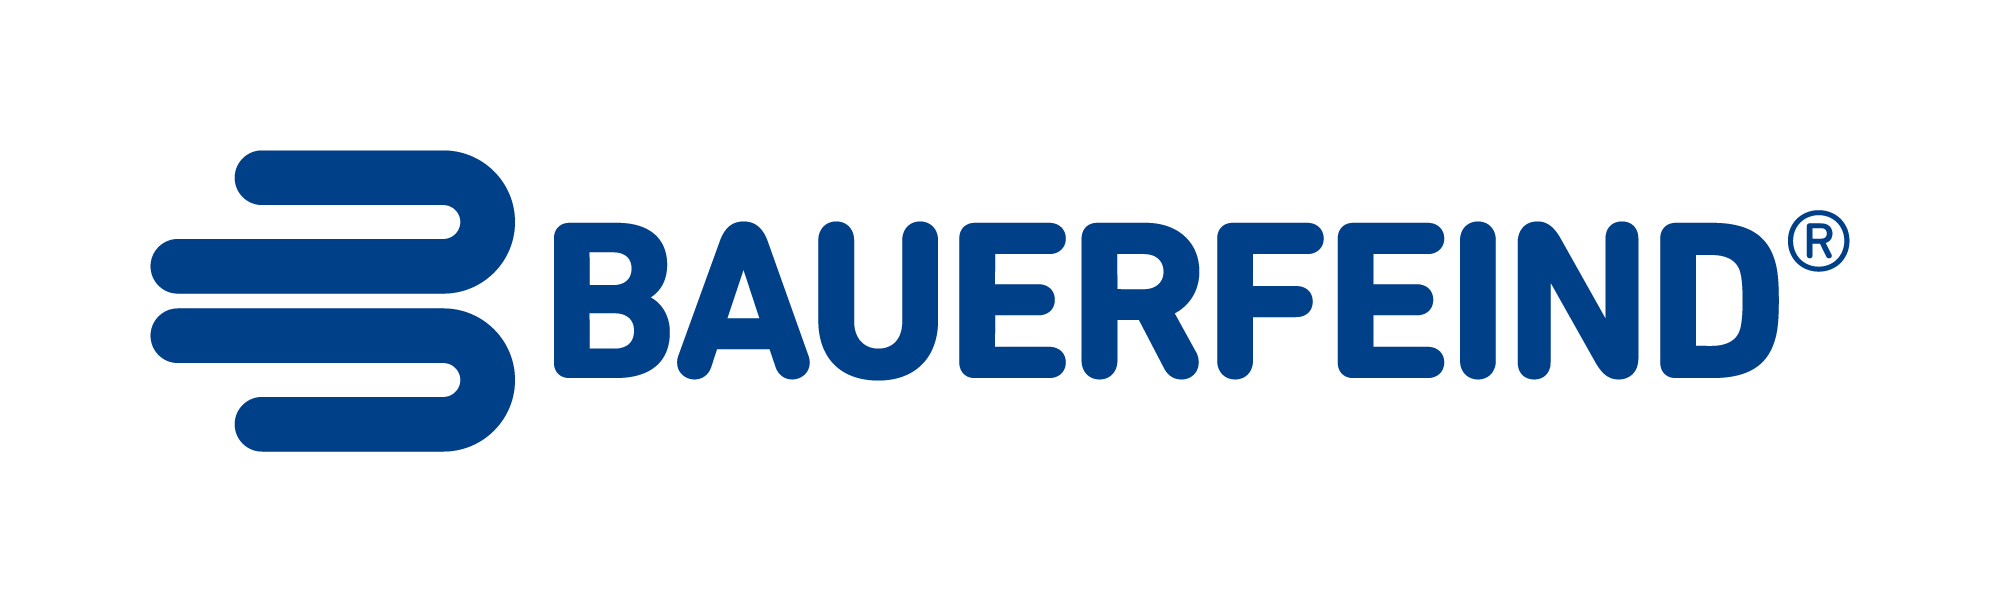 Bauerfeind Business Partner Support Centre logo